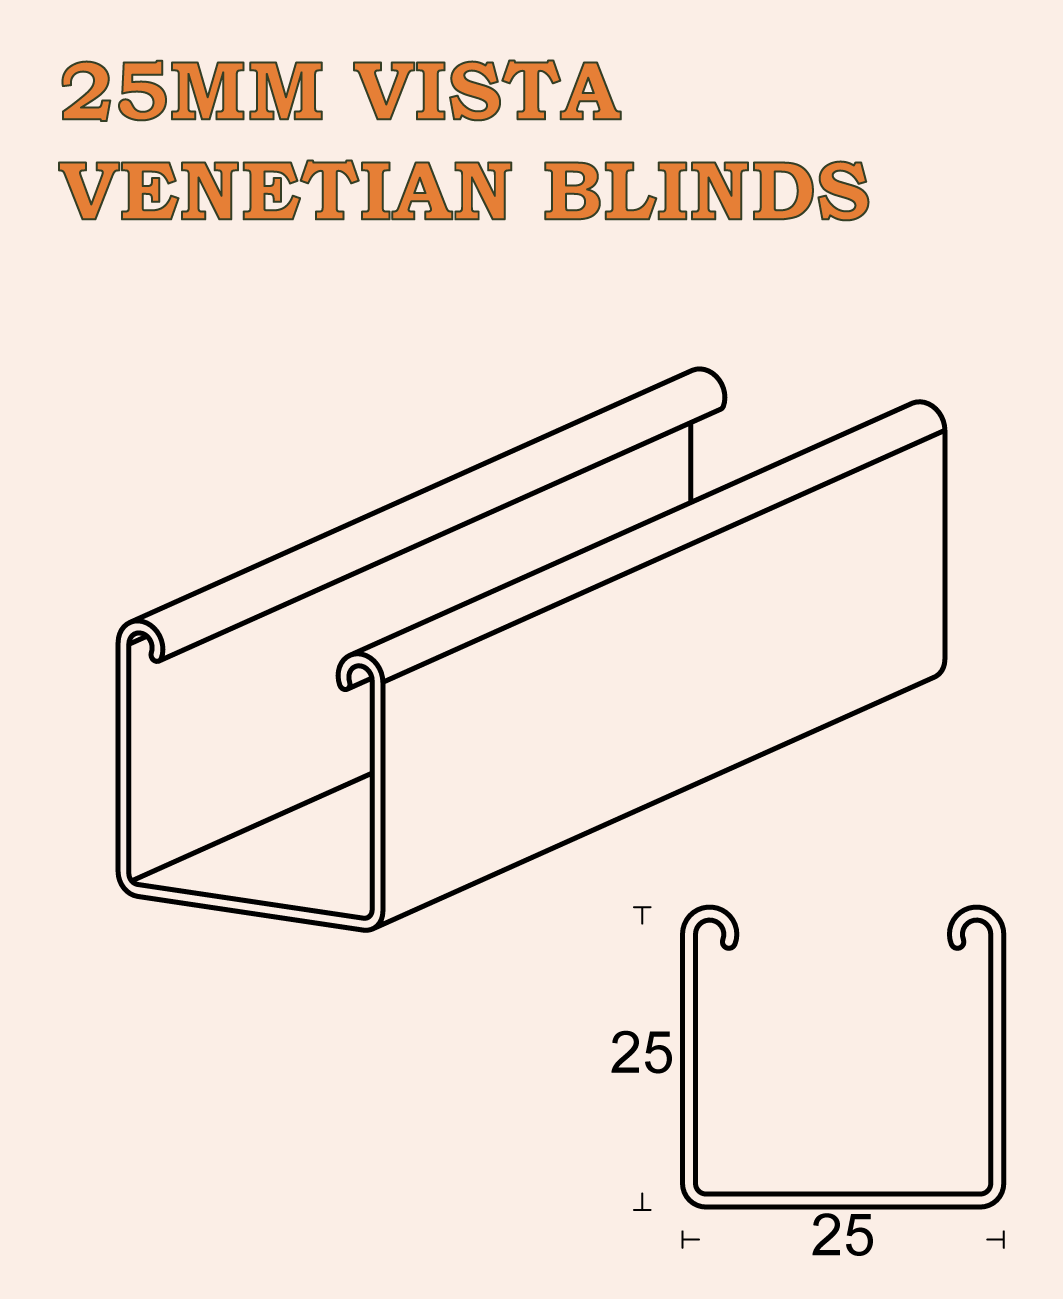 25MM VISTA VENETIAN BLINDS